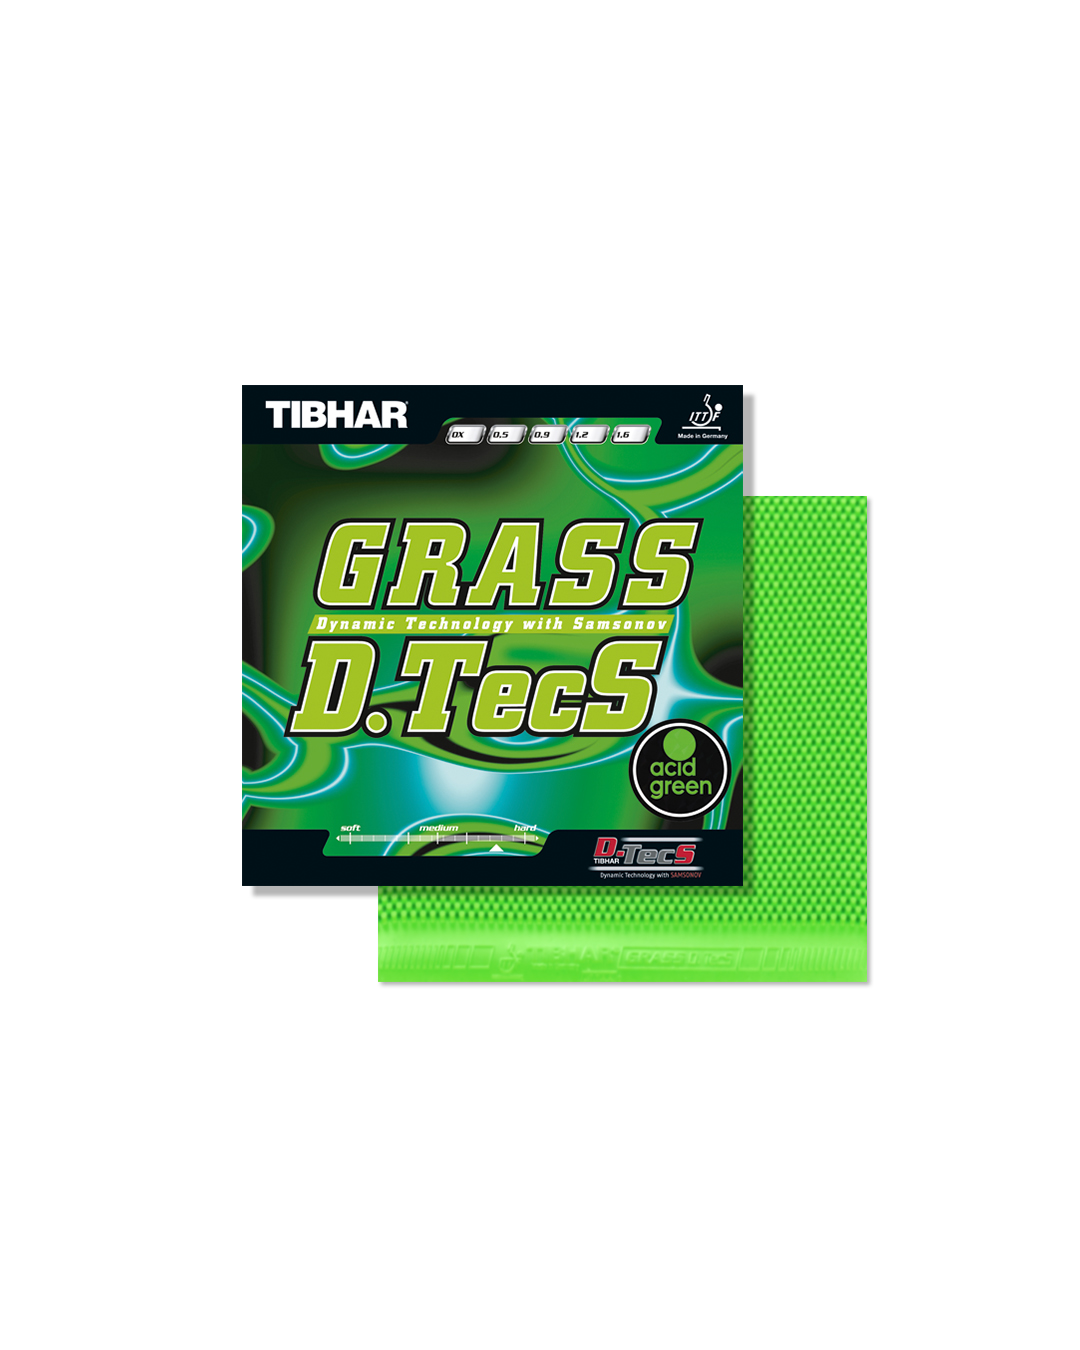 Goma de tenis de mesa Tibhar Grass D.Tecs COLOR (acid gre...